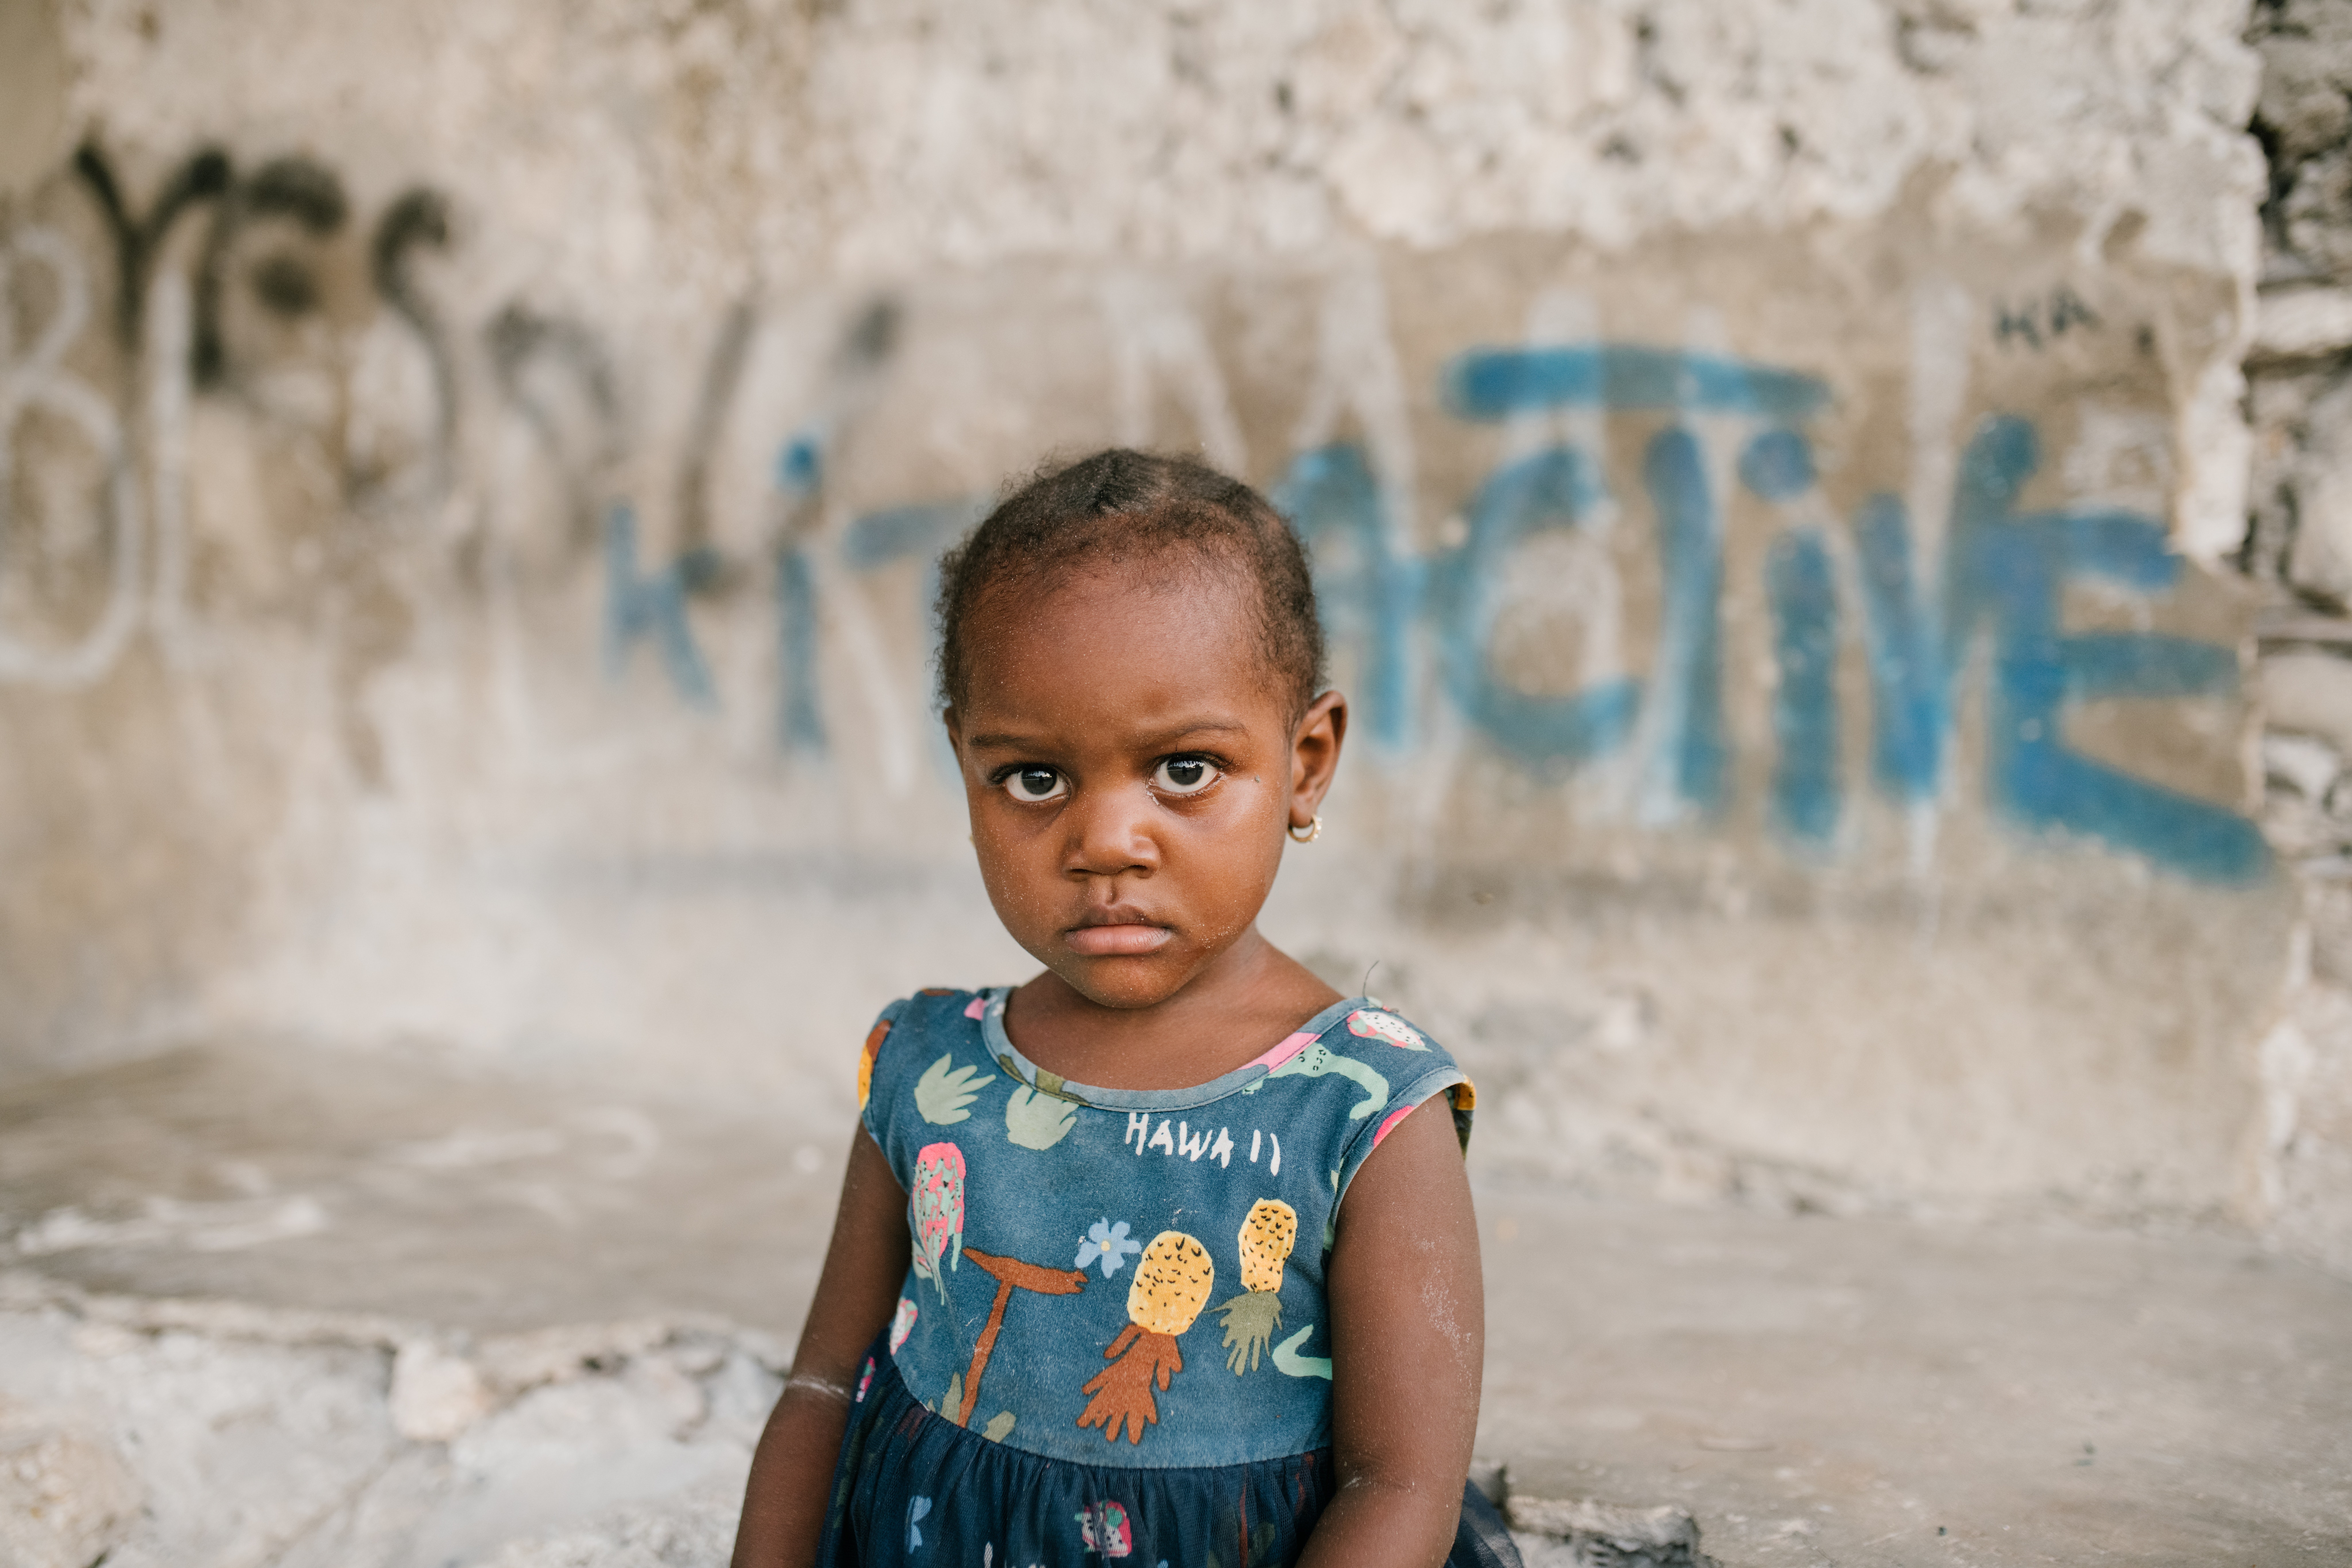 Menina negra em frente a um muro pixado, ilustrando o tema do artigo: infância, diversidade e responsabilidade